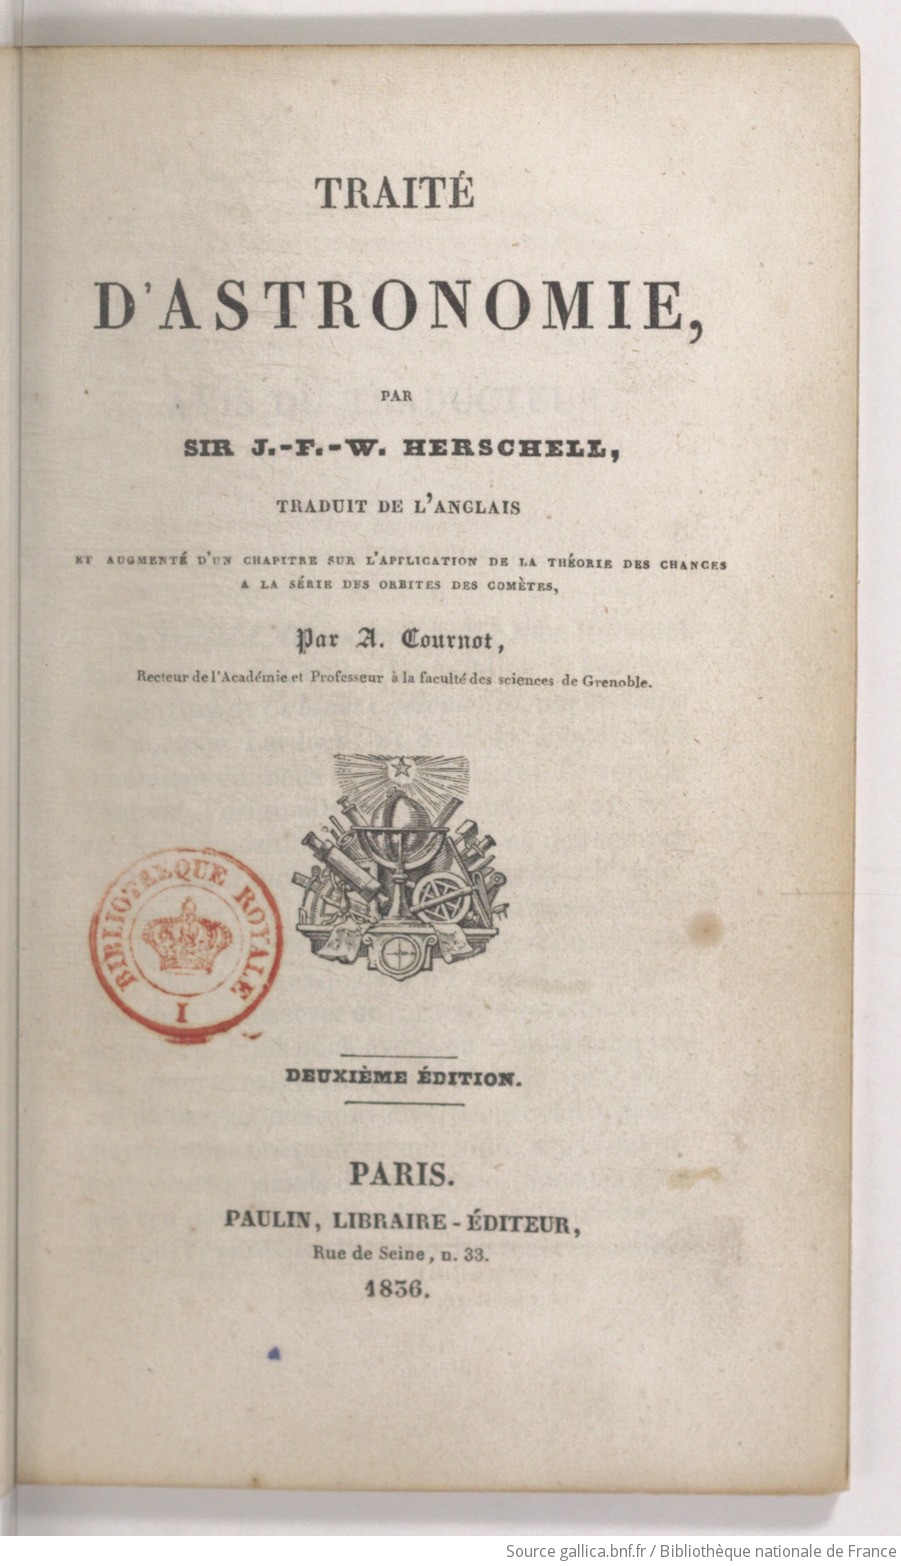 Traité d'astronomie (2e éd.) / par Sir J. F. W. Herschell ["sic"] ; traduit de l'anglais... par A. Cournot,...